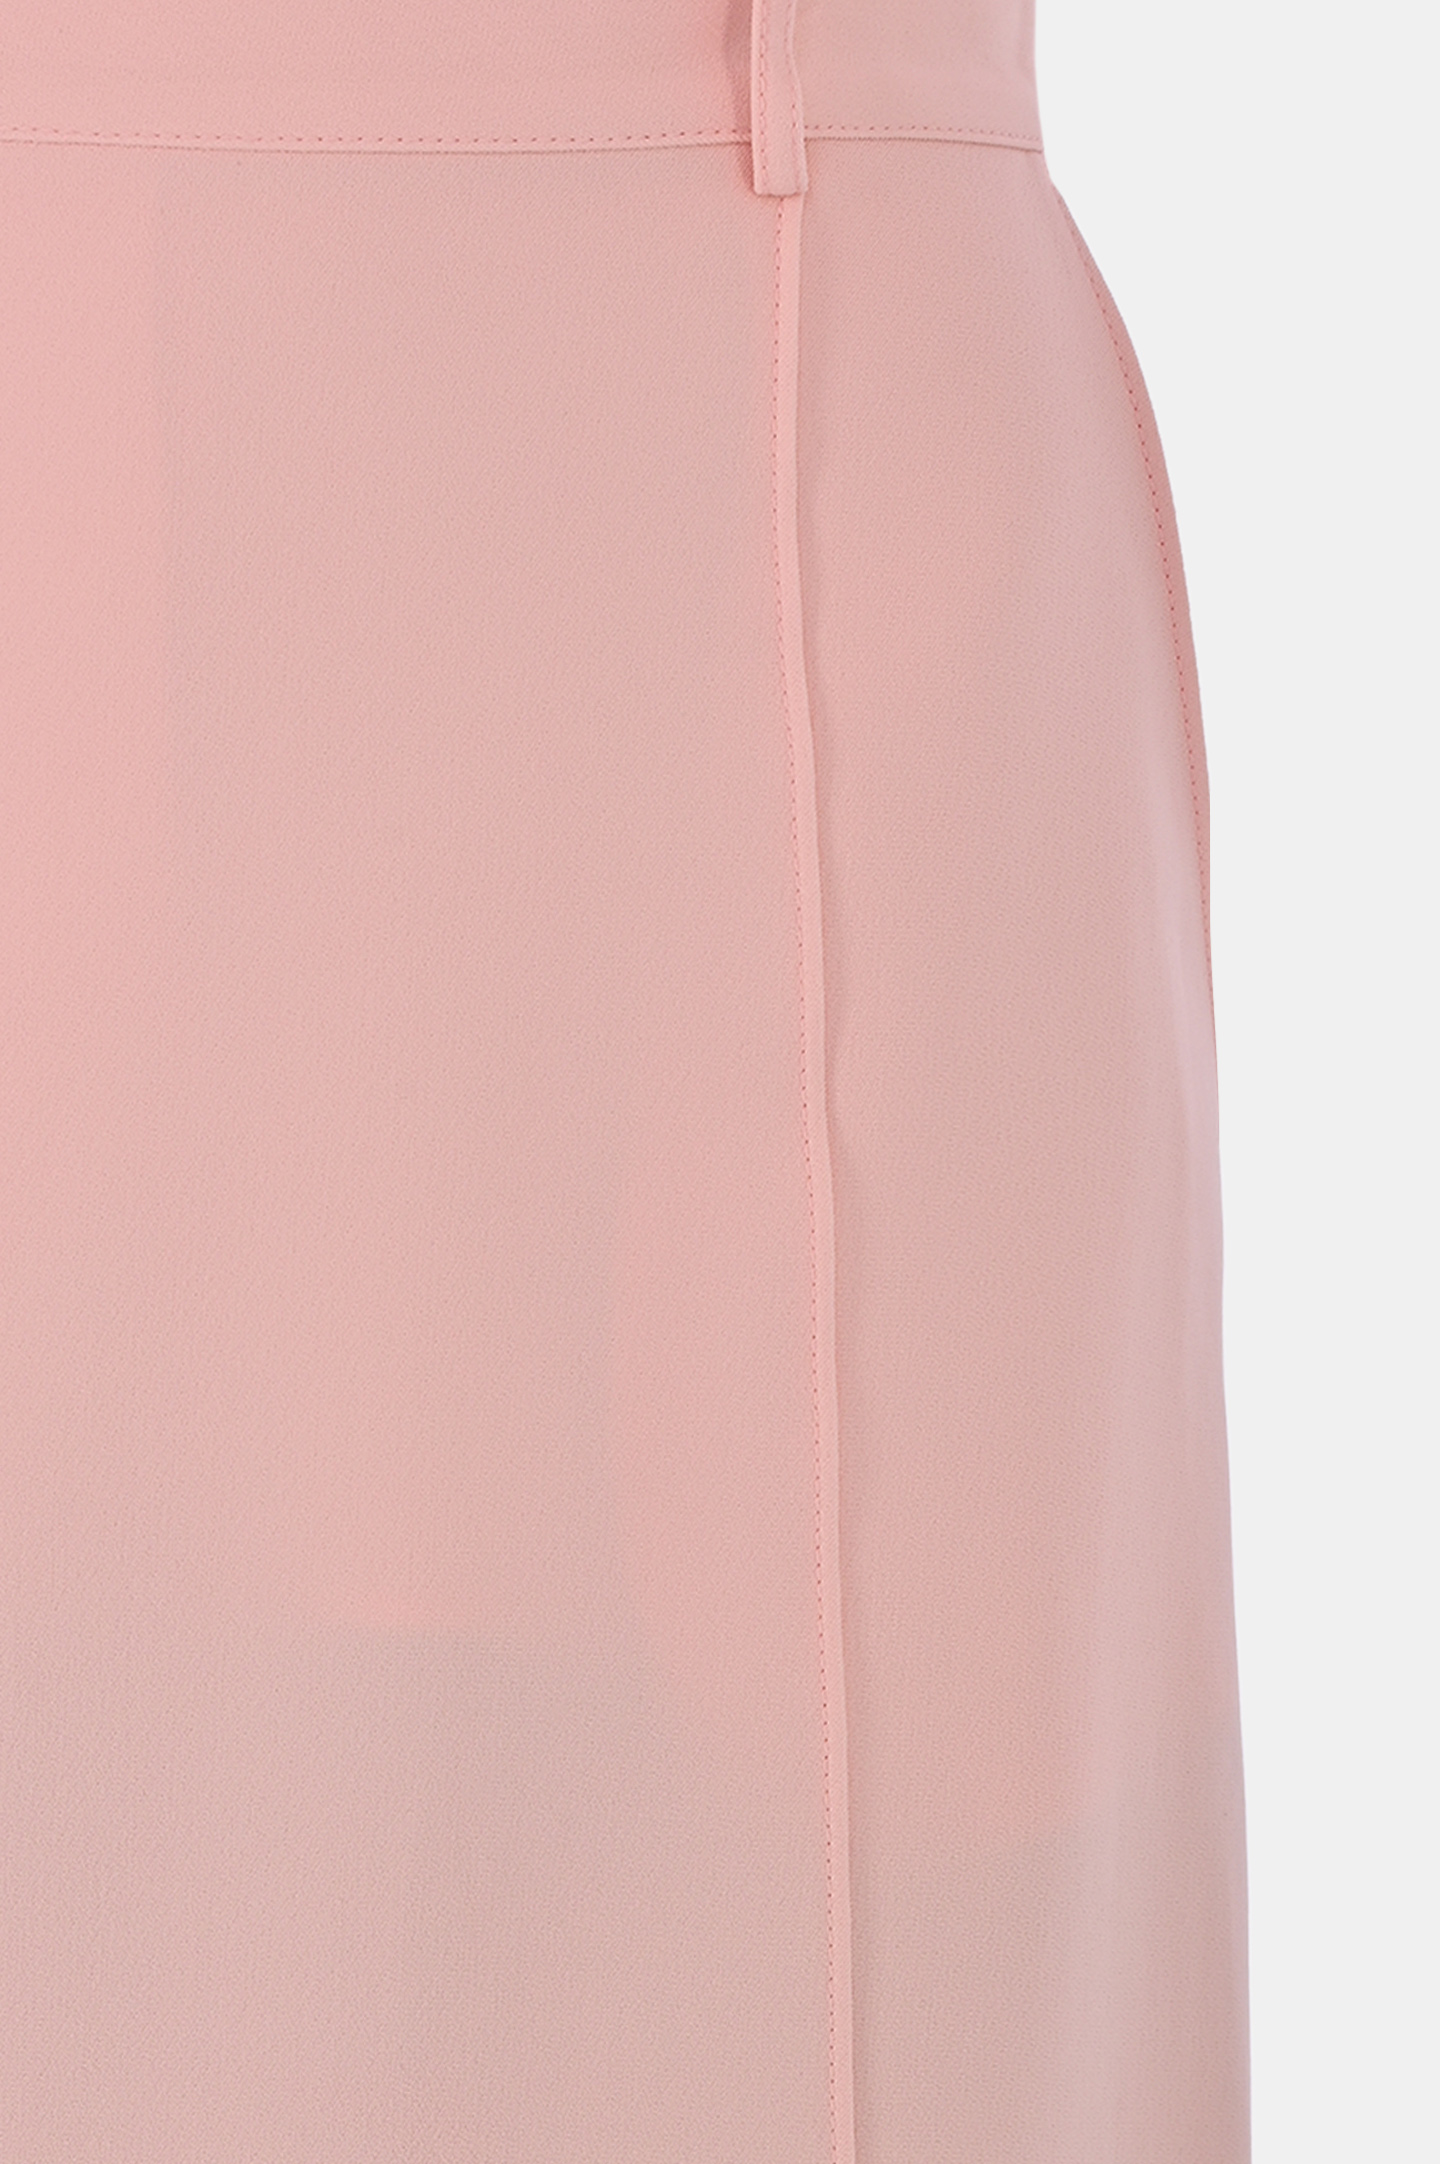 Юбка прямого покроя из вискозы KITON D55206K0562C0, цвет: Розовый, Женский